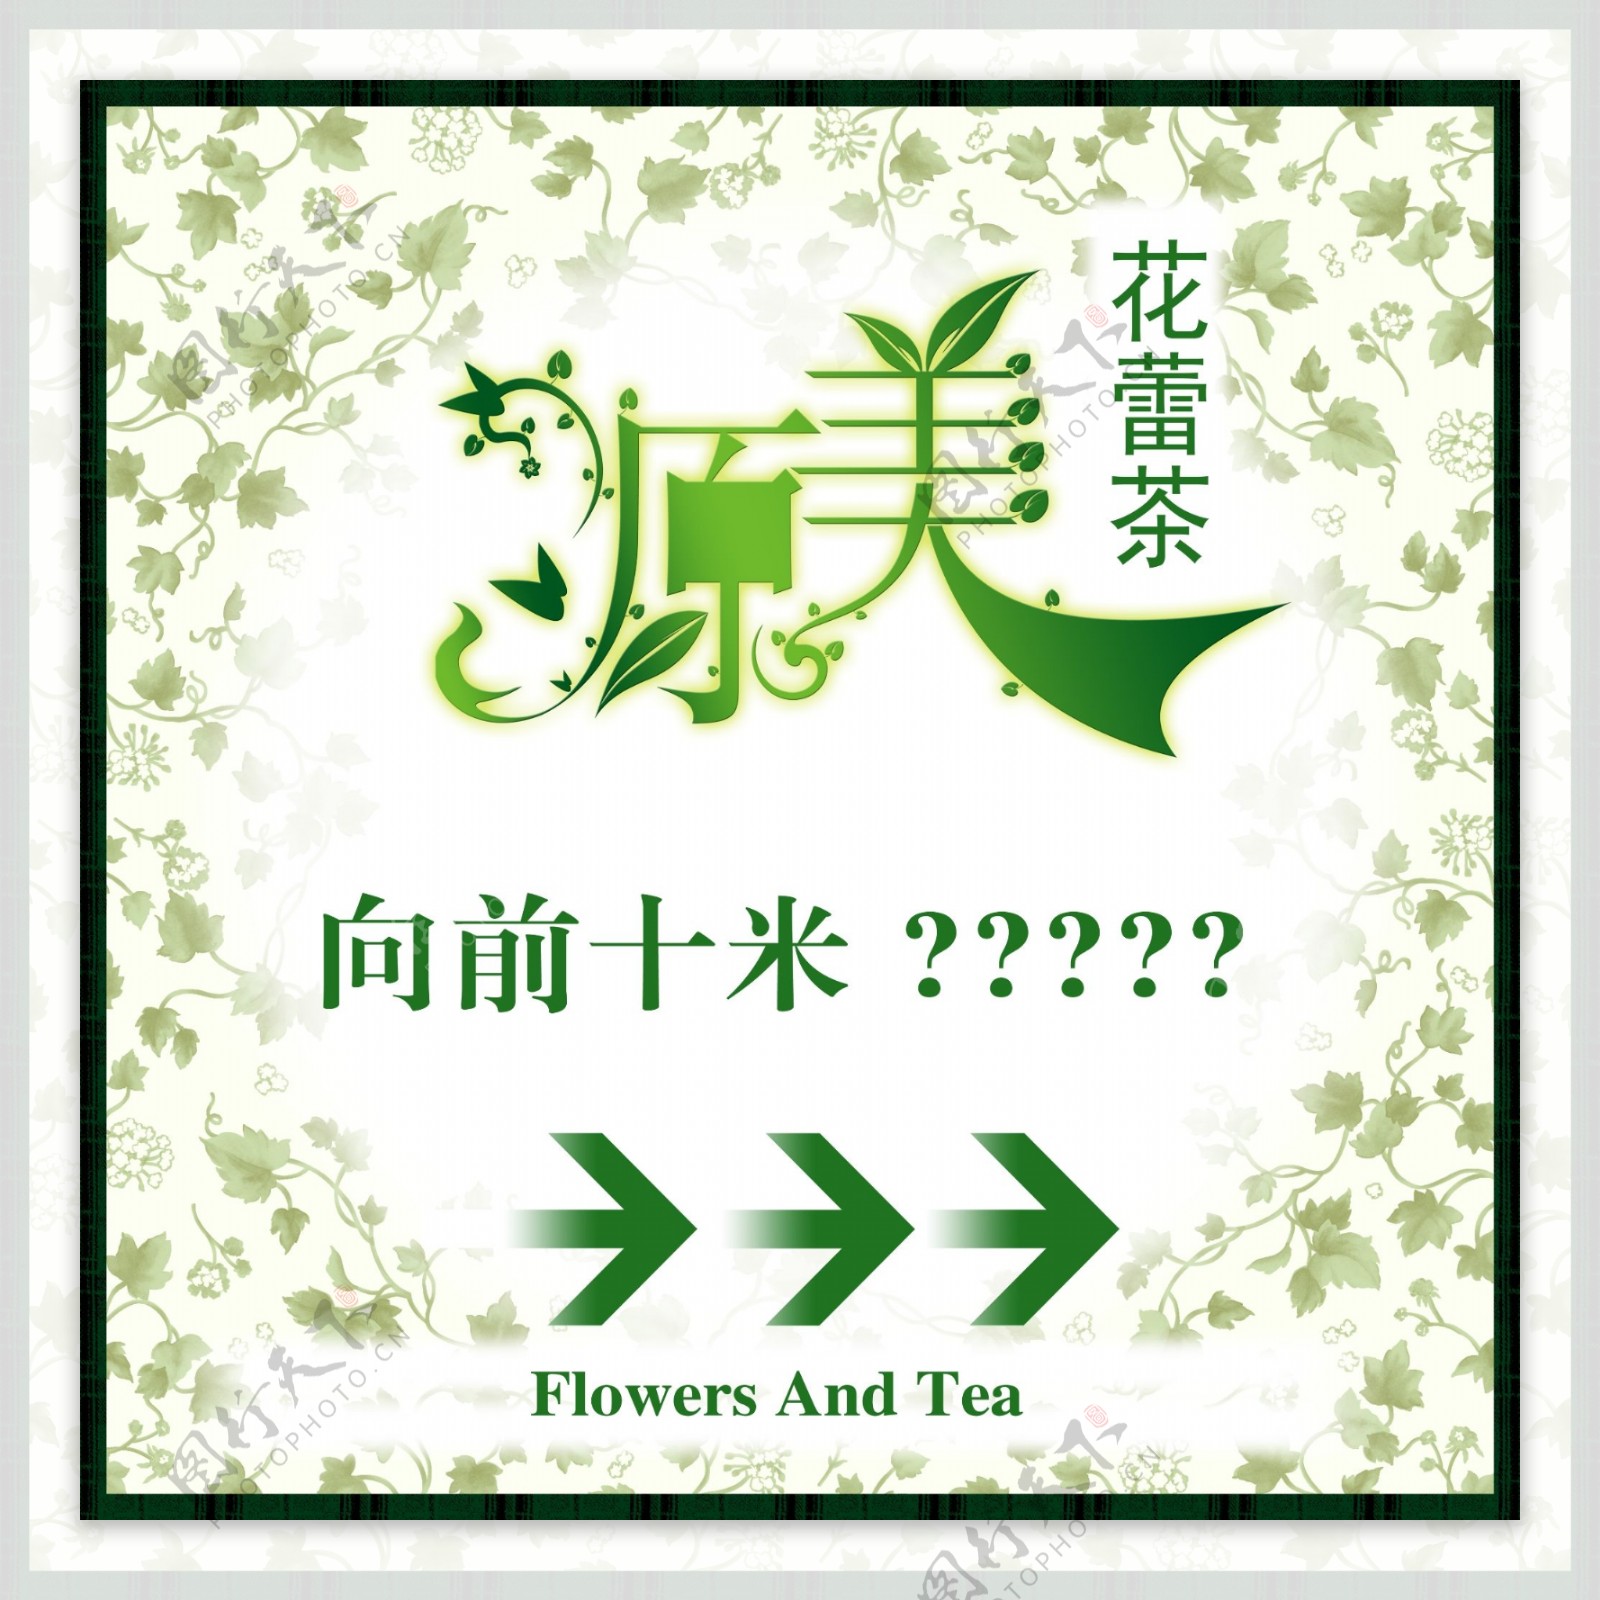 原美花蕾茶指示牌创意广告设计图片